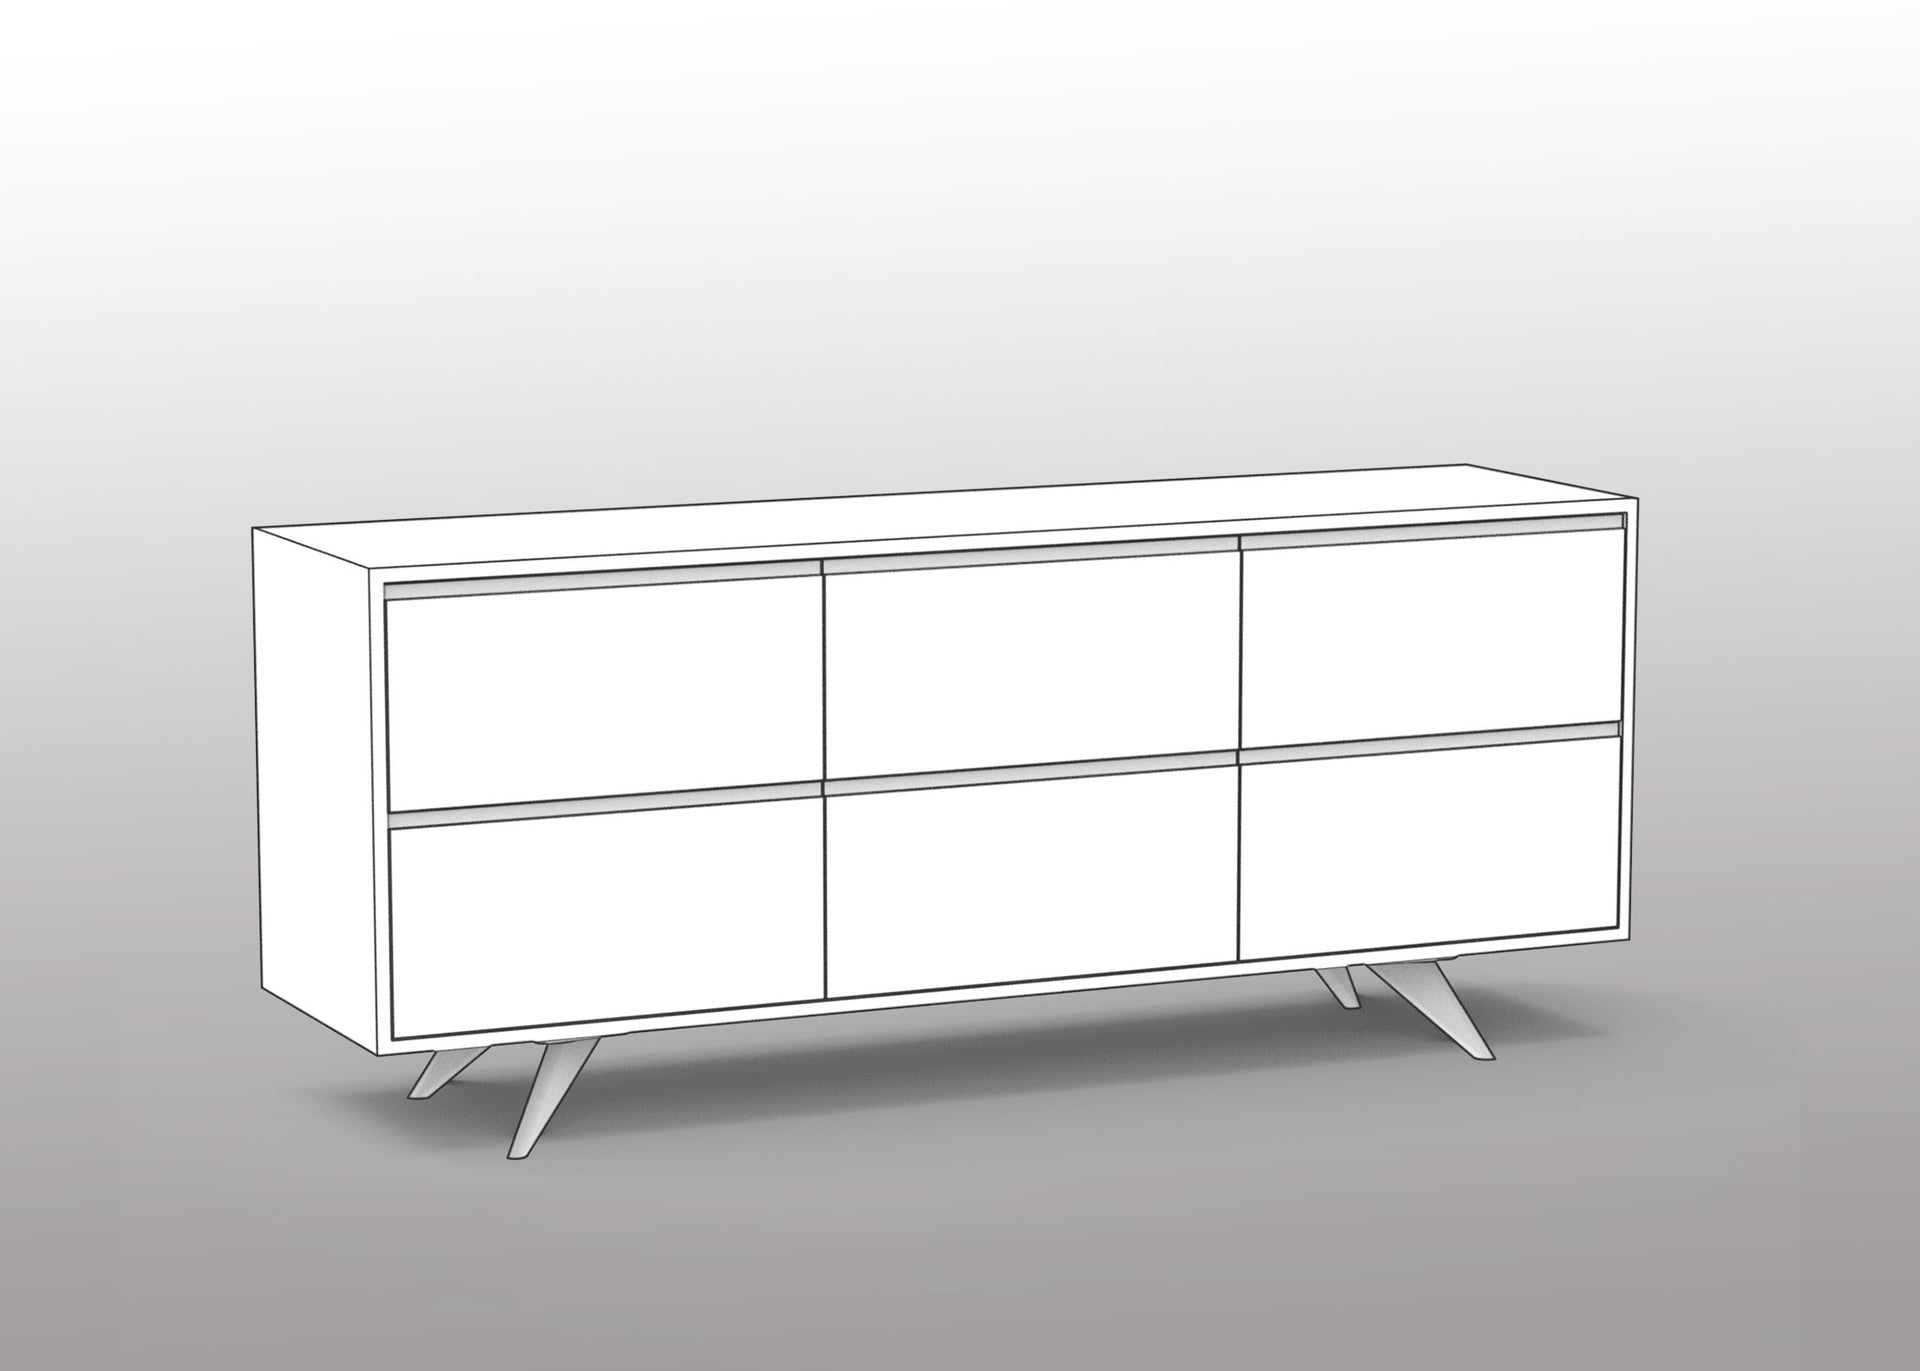 Customizable Modern Dresser: 3 Column / 2 Row